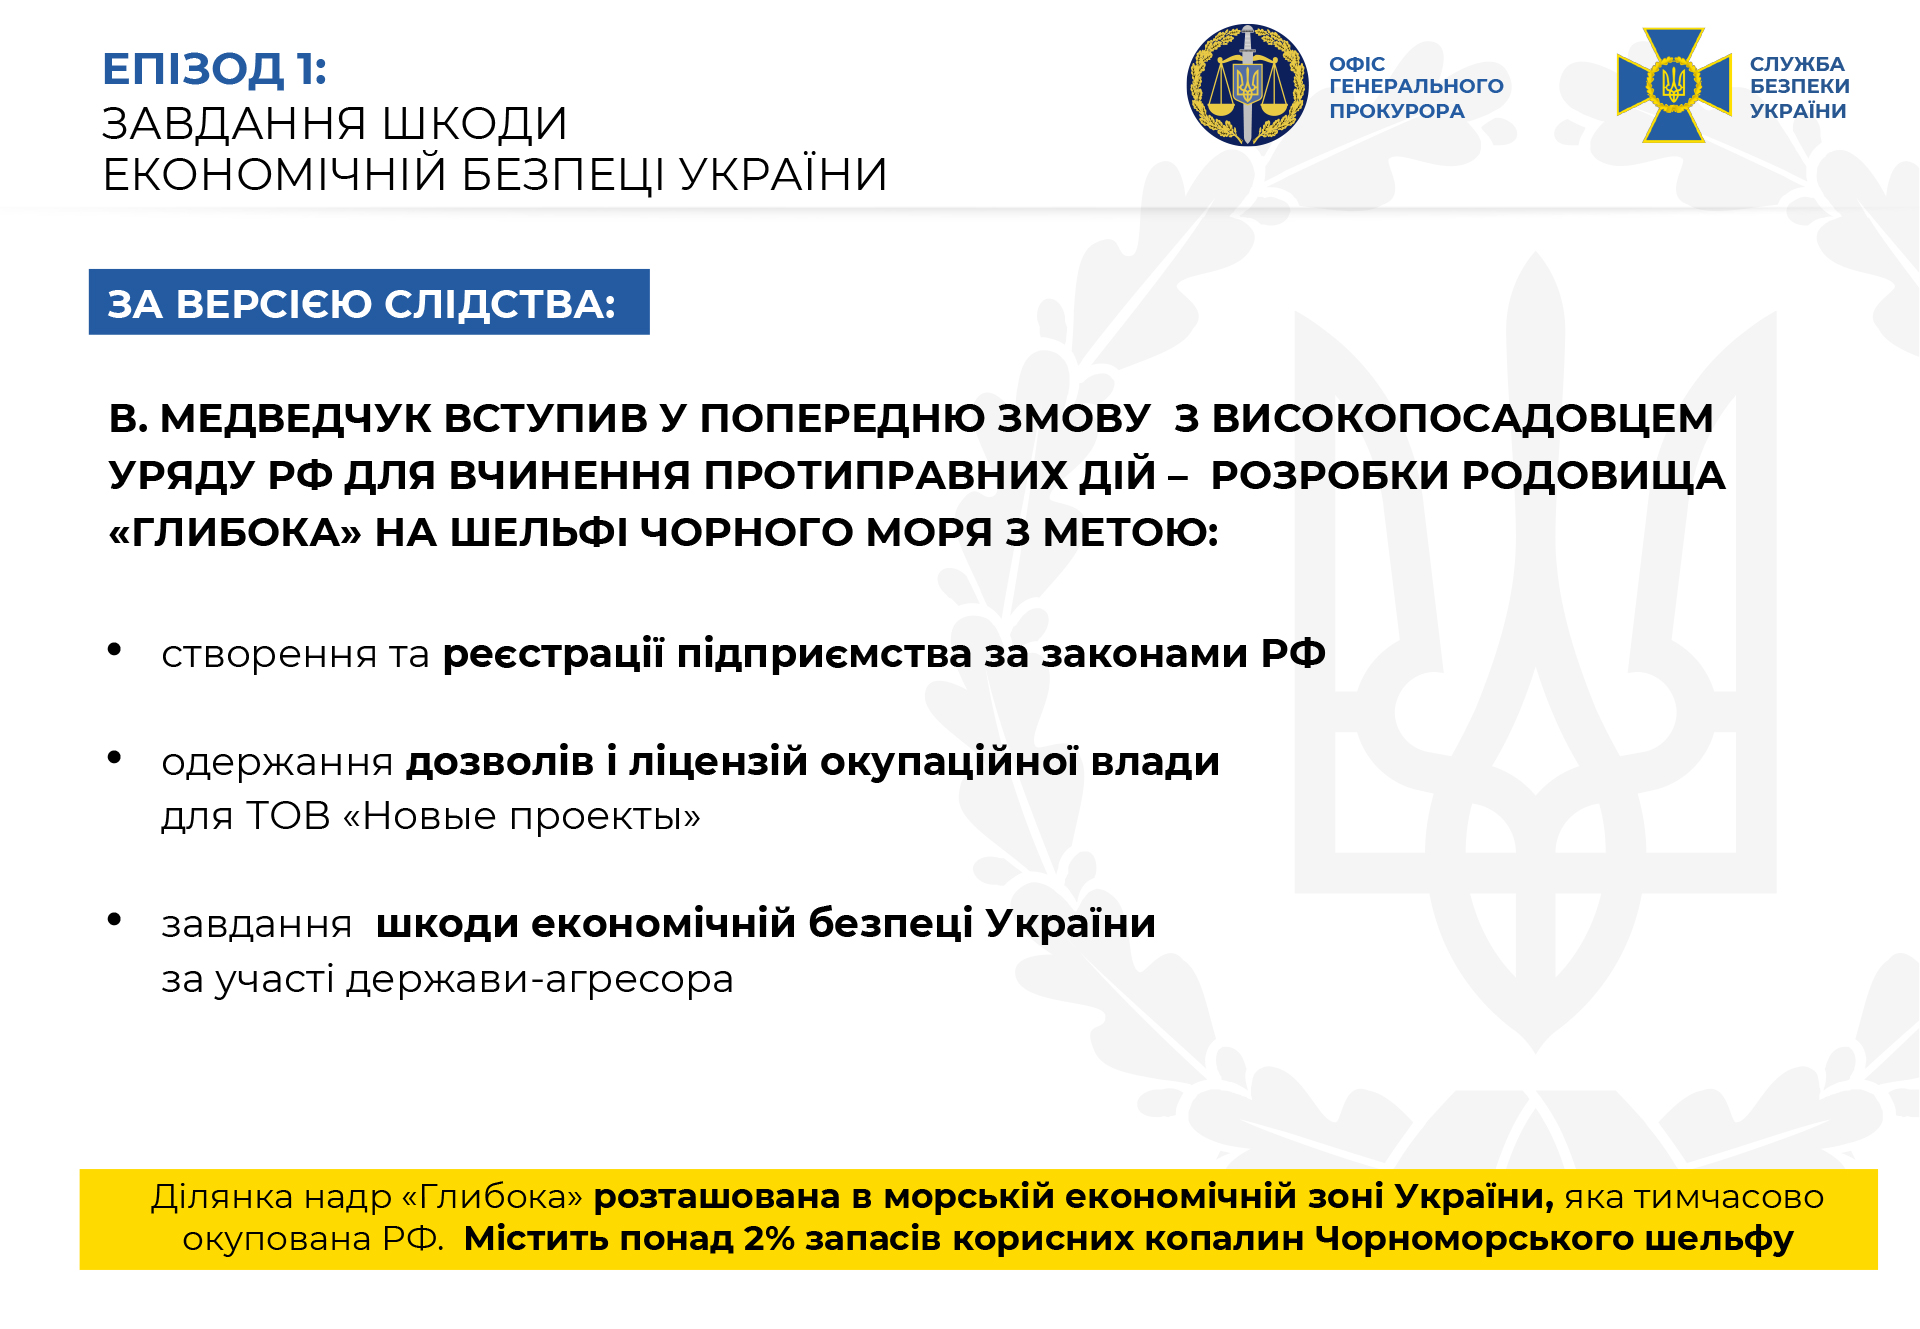 СБУ: Медведчук и Козак вступили в сговор с РФ для подрывной экономической деятельности